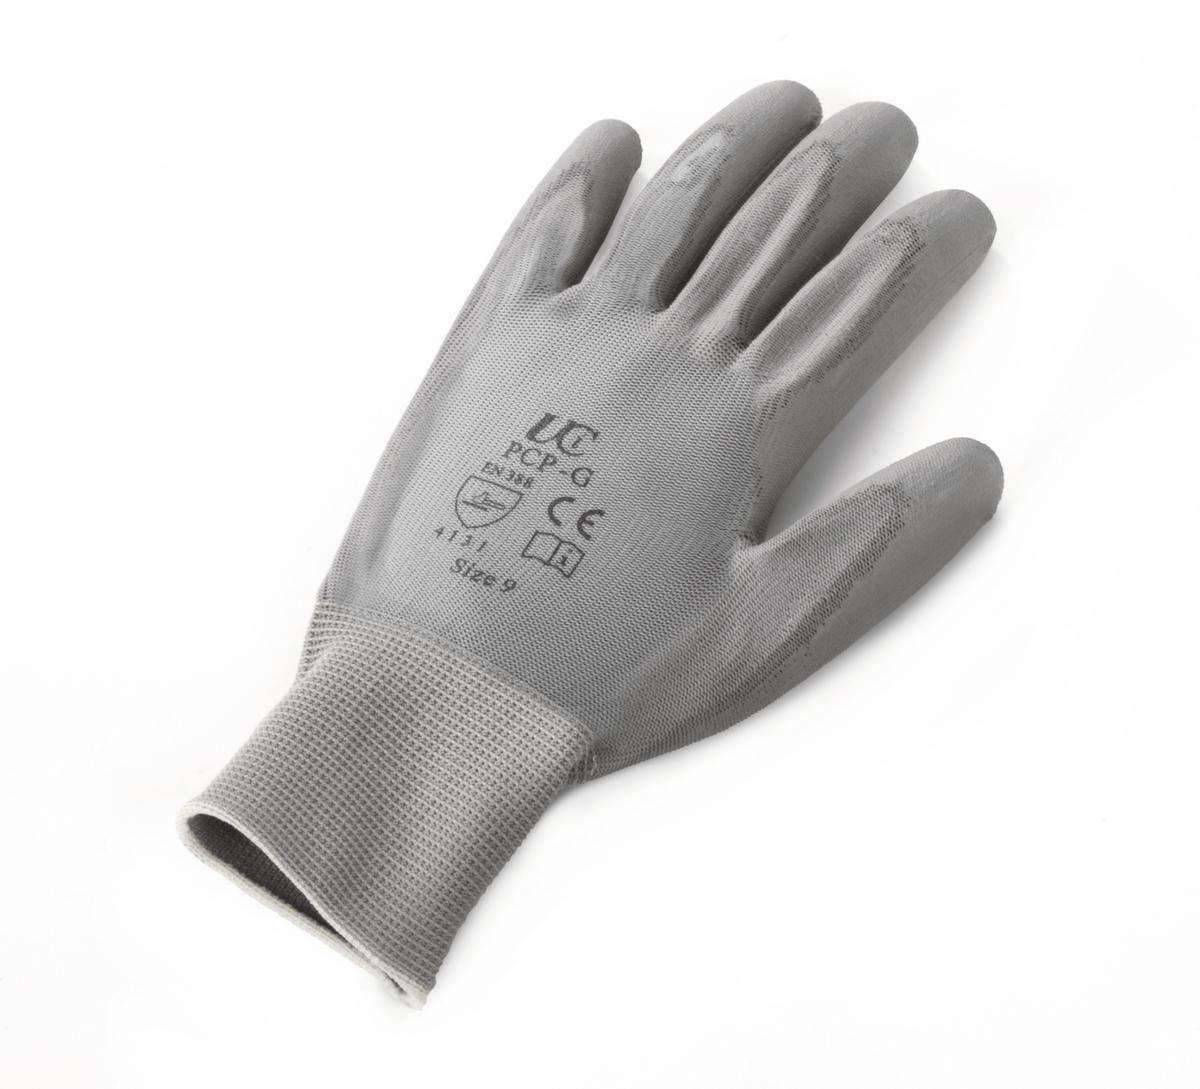 Schutzhandschuhe Ultrane für den Industriegebrauch, Polyamid, Größe 7 Standard 5 ZOOM